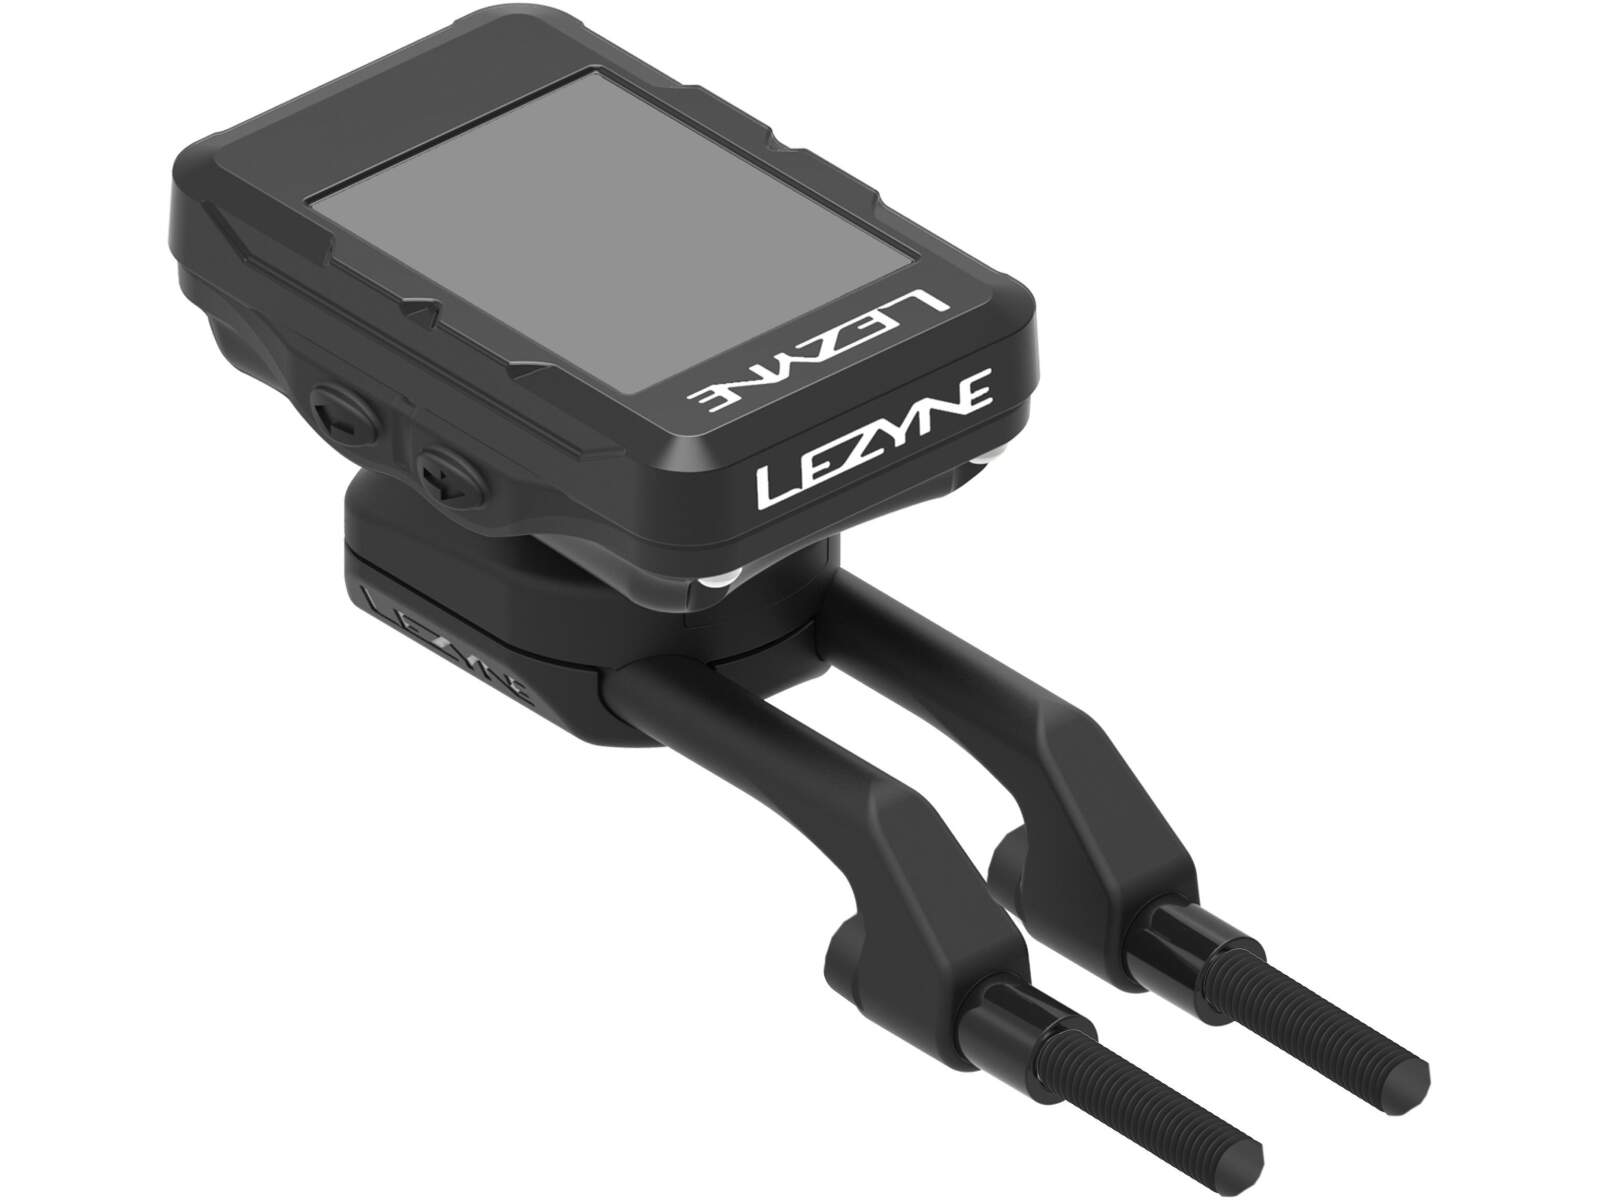 LEZYNE X-LOCK DUO - Wszechstronny przedni uchwyt GPS i akcesoriów - Wiele opcji montażu w celu maksymalnego rozmieszczenia GPS i akcesoriów - Konstrukcja z matrycą kompozytową z aluminiowymi ramionami - Kolor: czarny - Zawiera elementy montażowe - Kompatybilny z uchwytem Lezyne X-Lock i GoPro